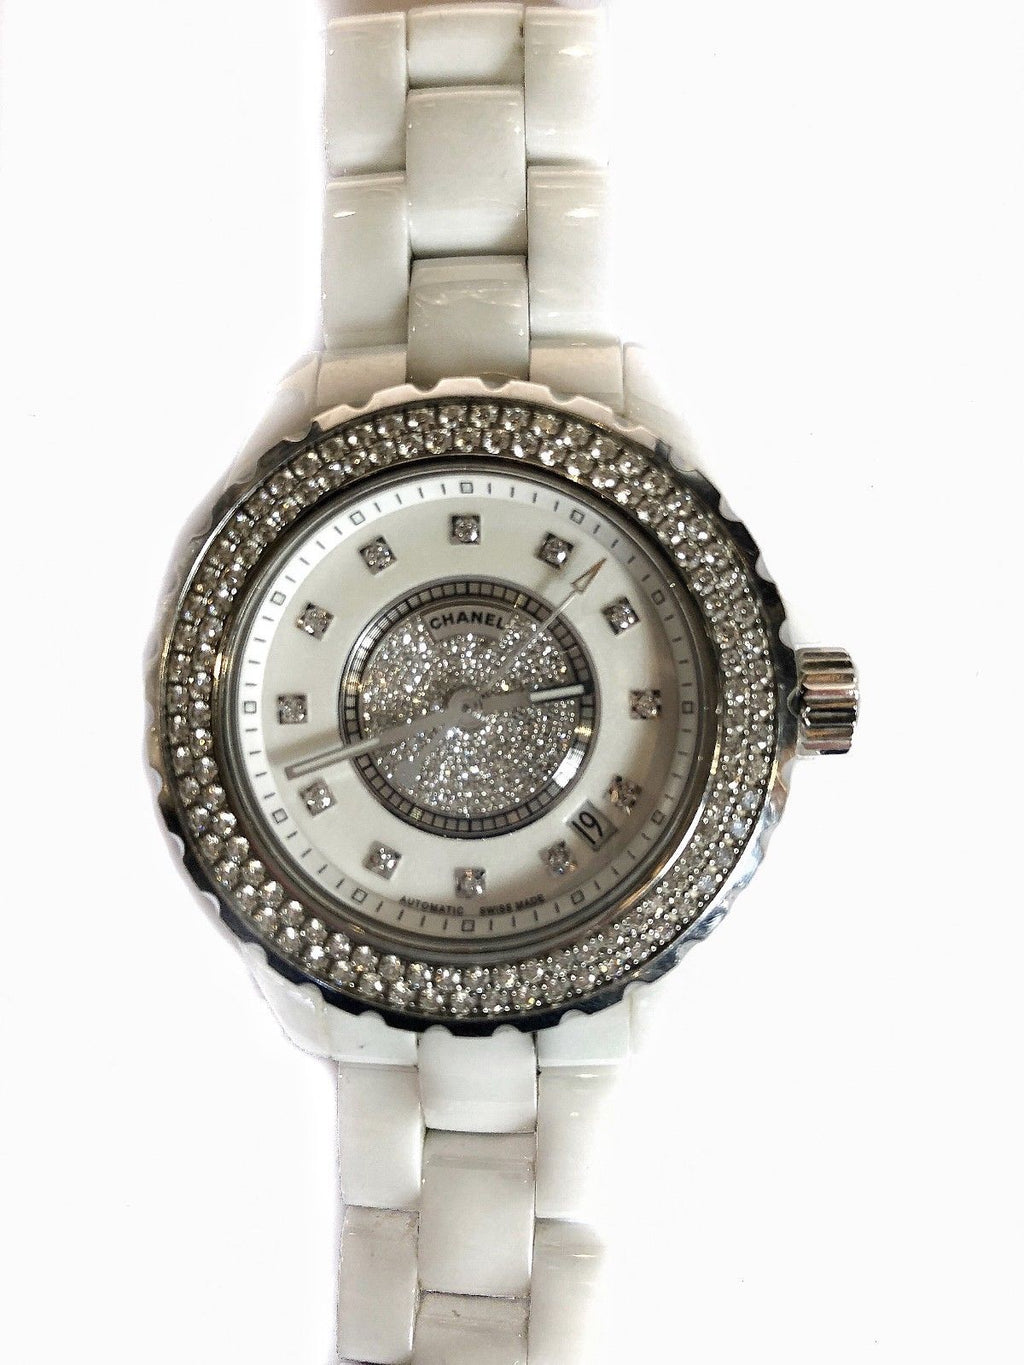 CHANEL J12 Automatic Ceramic Lady's Watch w/ 12 Diamonds! - $30K VALUE!